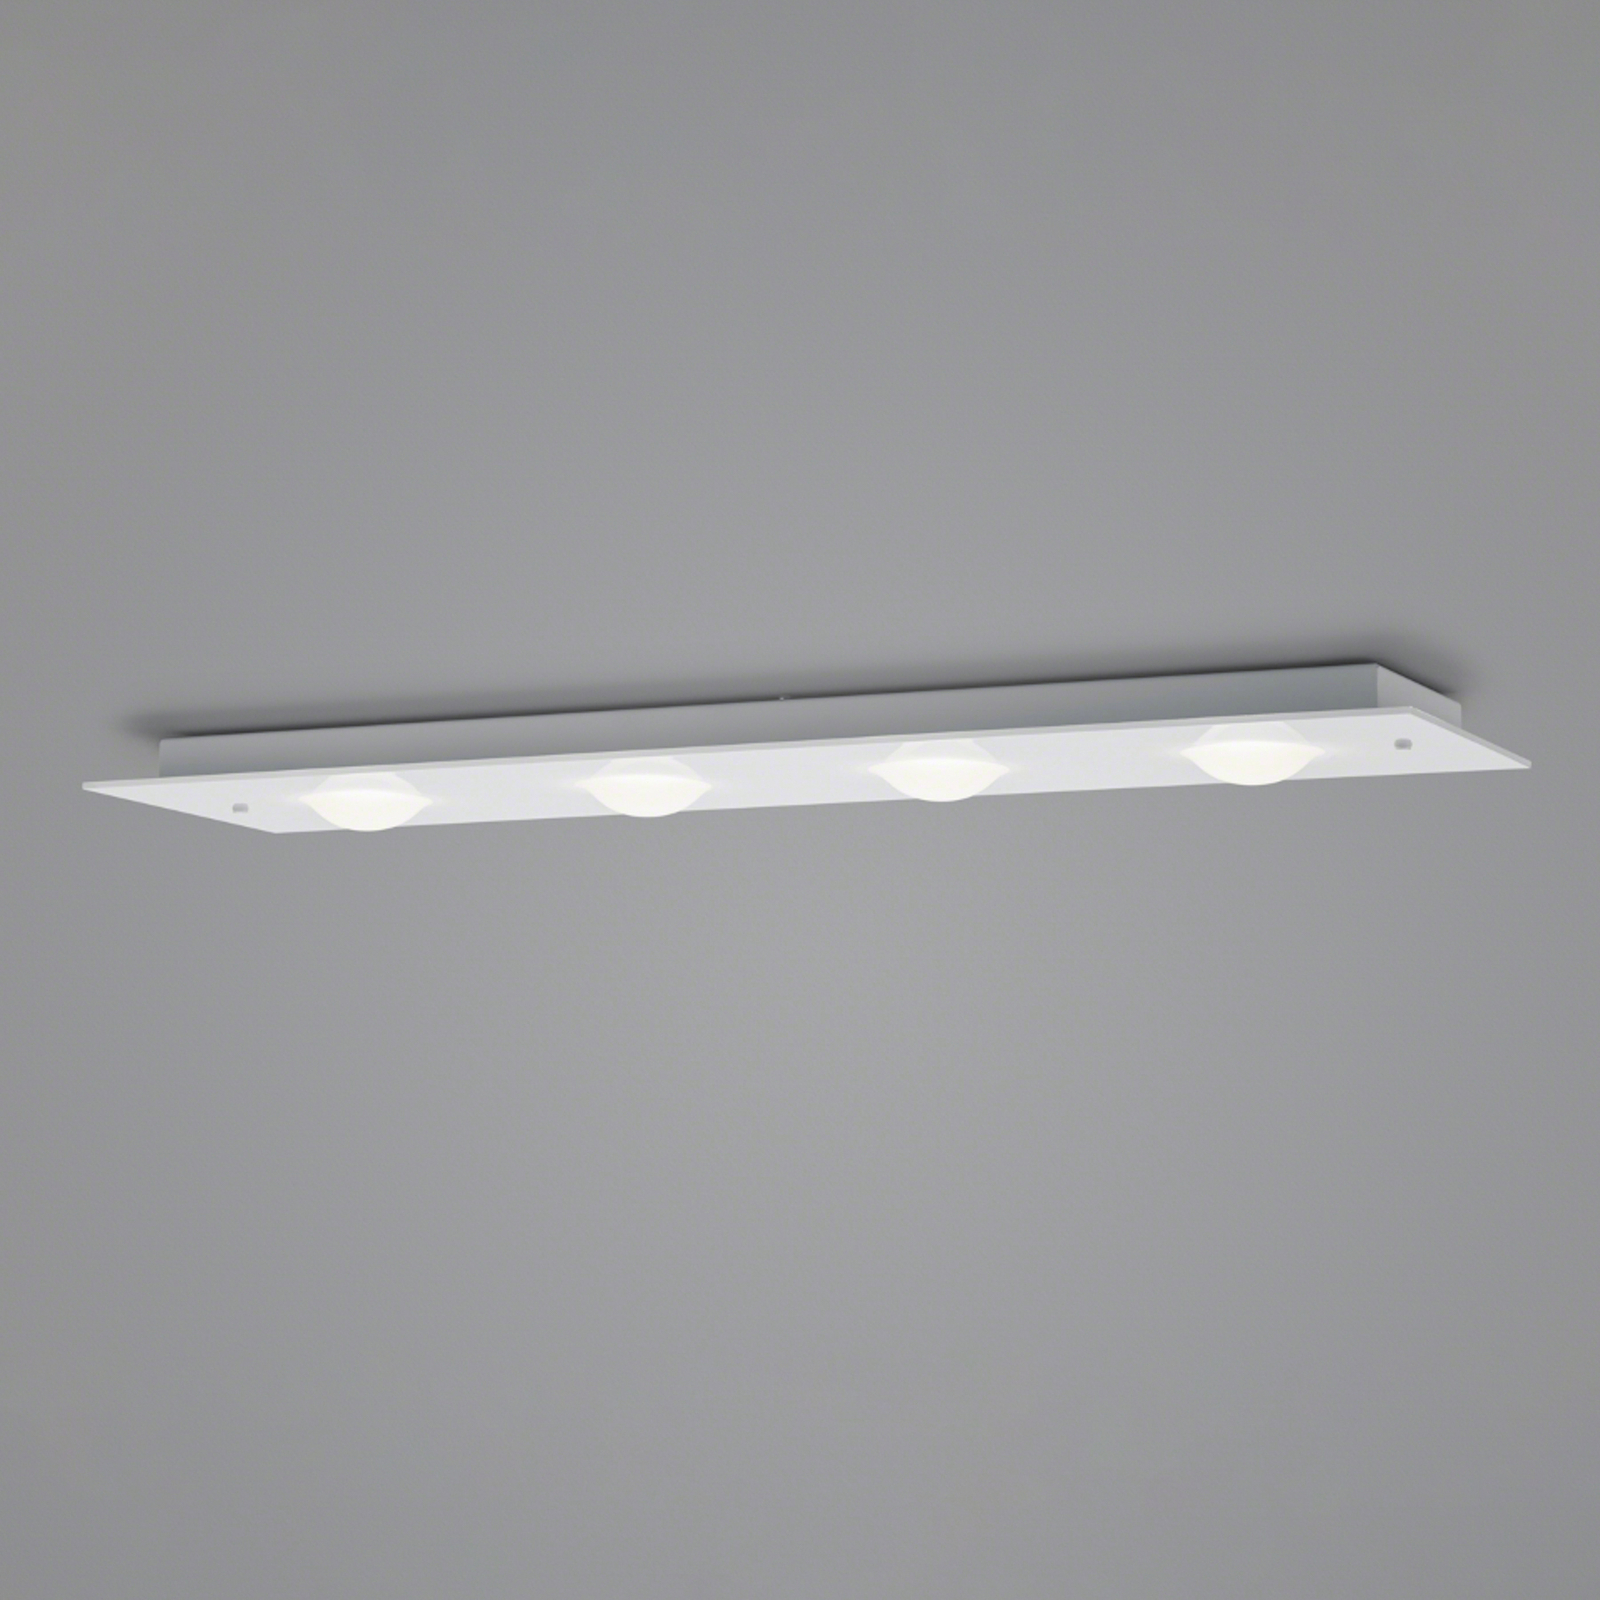 Helestra Nomi LED stropní světlo 75x21cm dim bílá